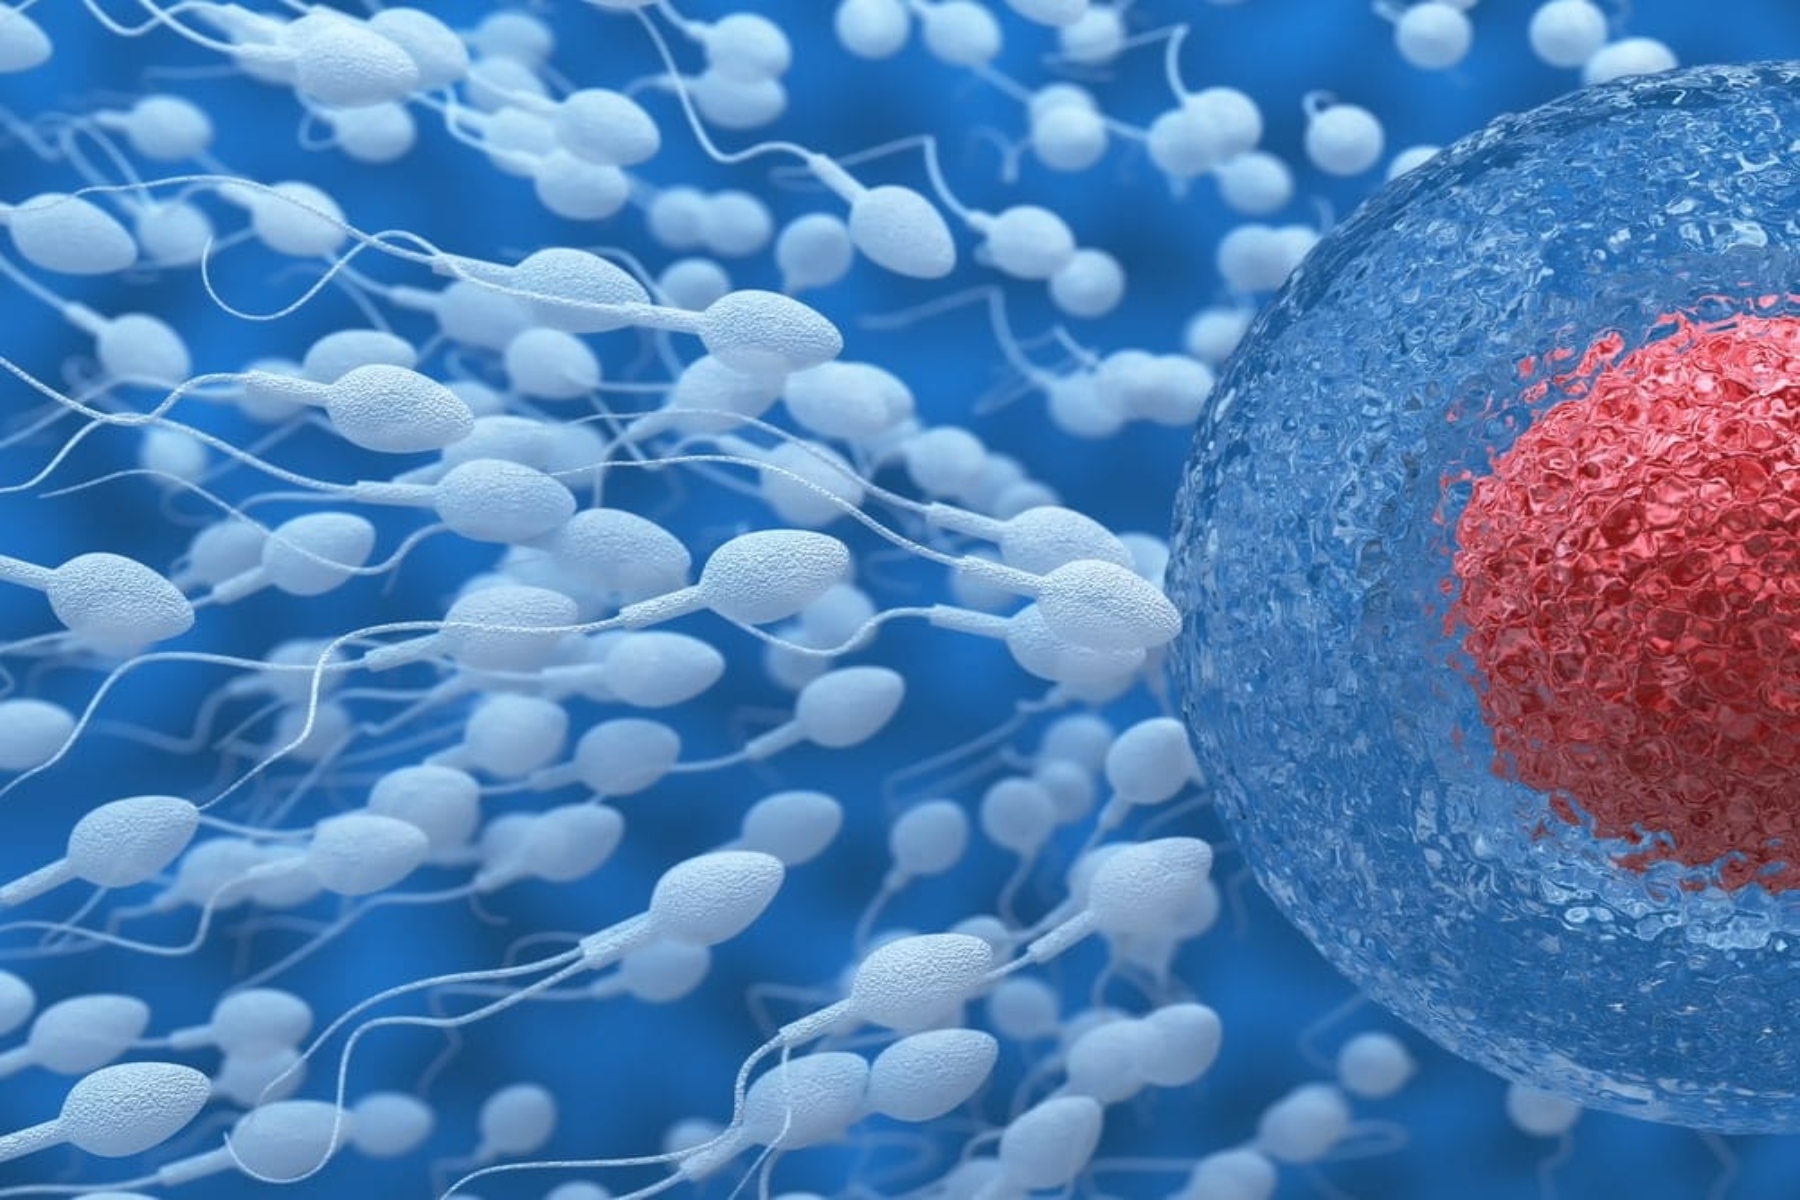 Δωρεά σπέρματος: Λιγότεροι από 4 στους 100 άνδρες φτάνουν στο τέλος της διαδικασίας